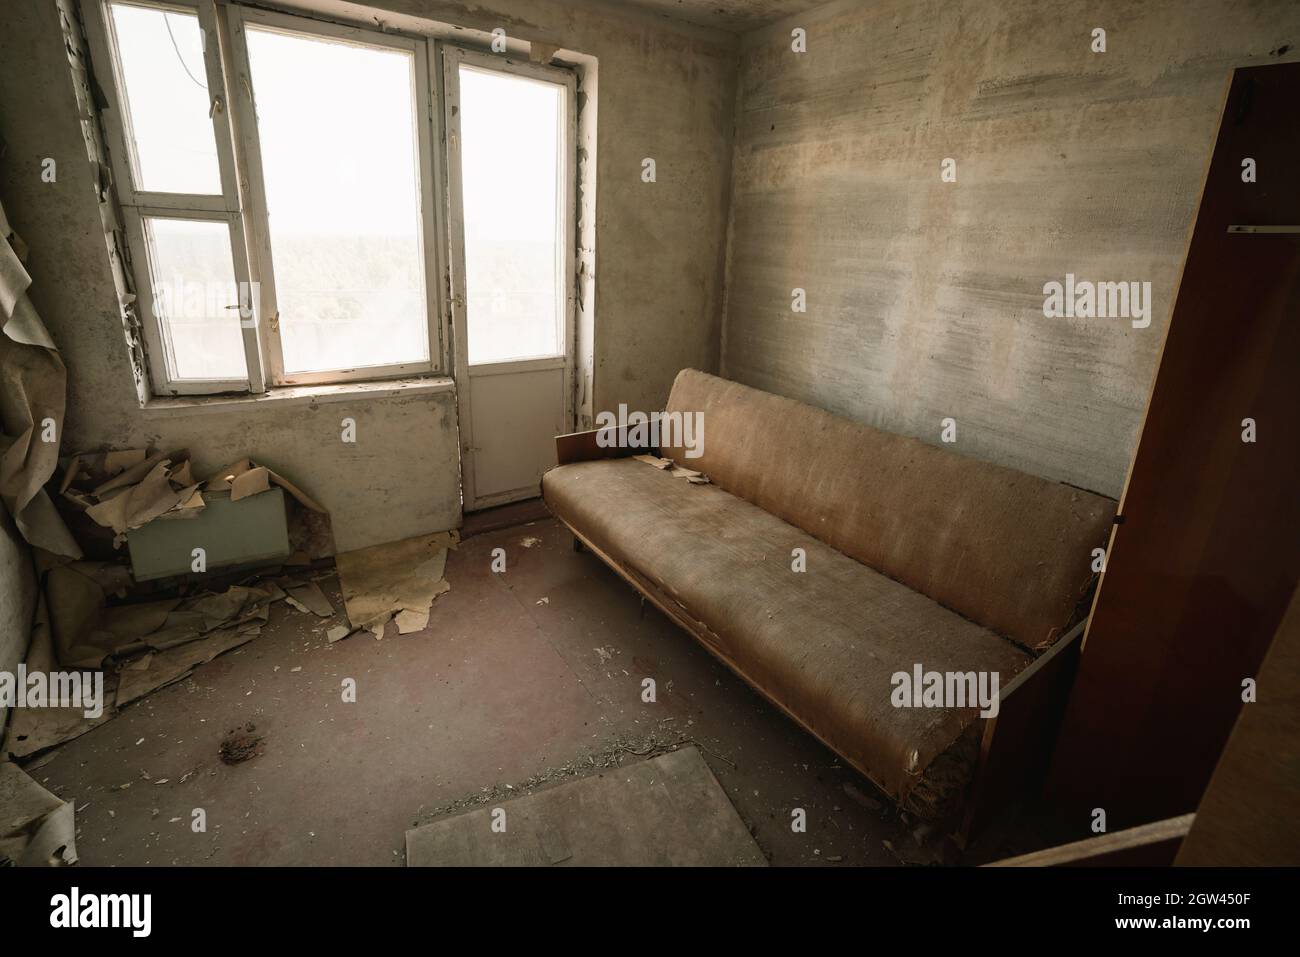 Soggiorno e divano in un appartamento a Pripyat - Pripyat, zona di esclusione di Chernobyl, Ucraina Foto Stock